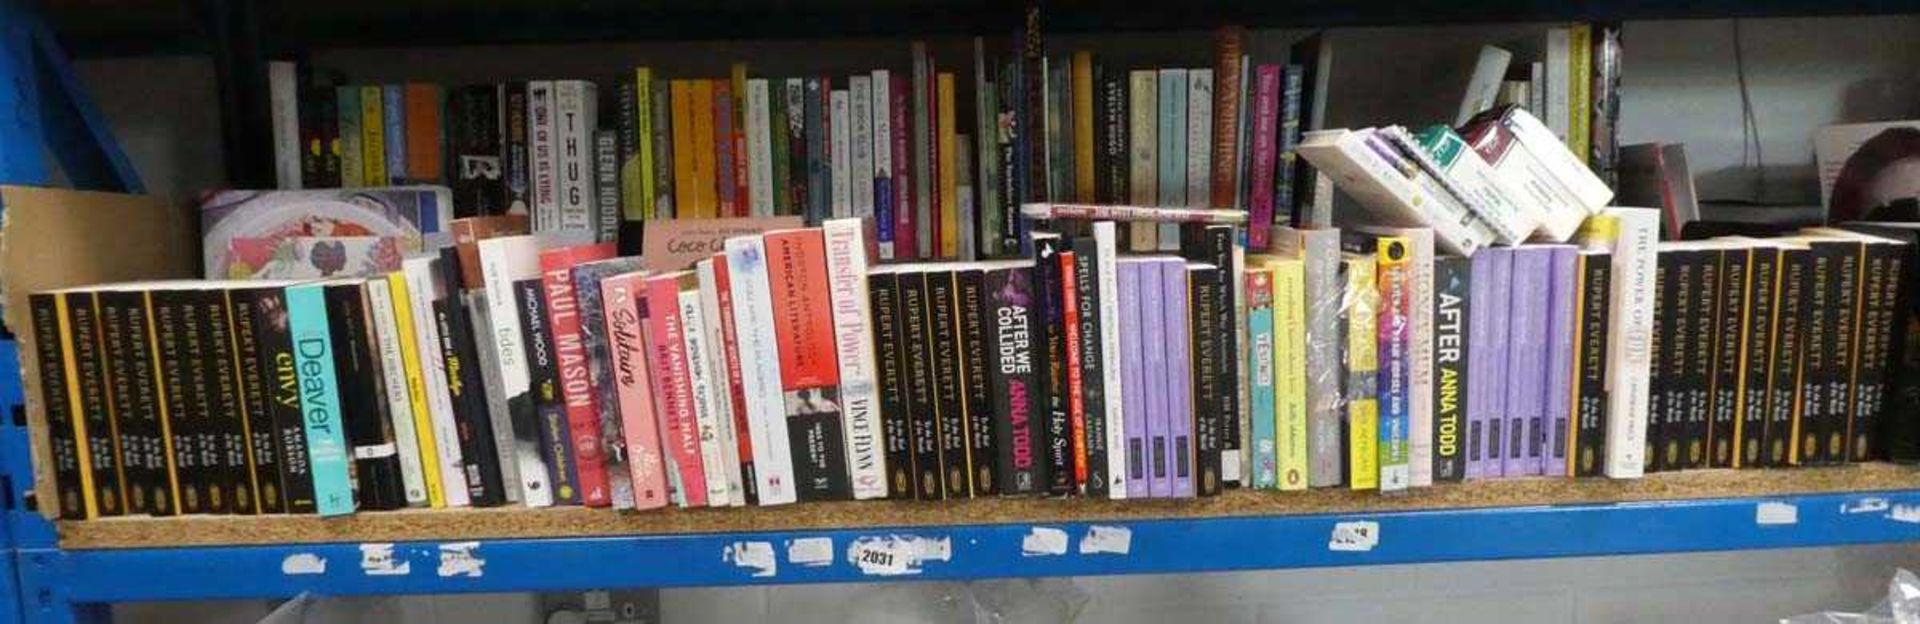 Shelf comprising hard back and paperback novels